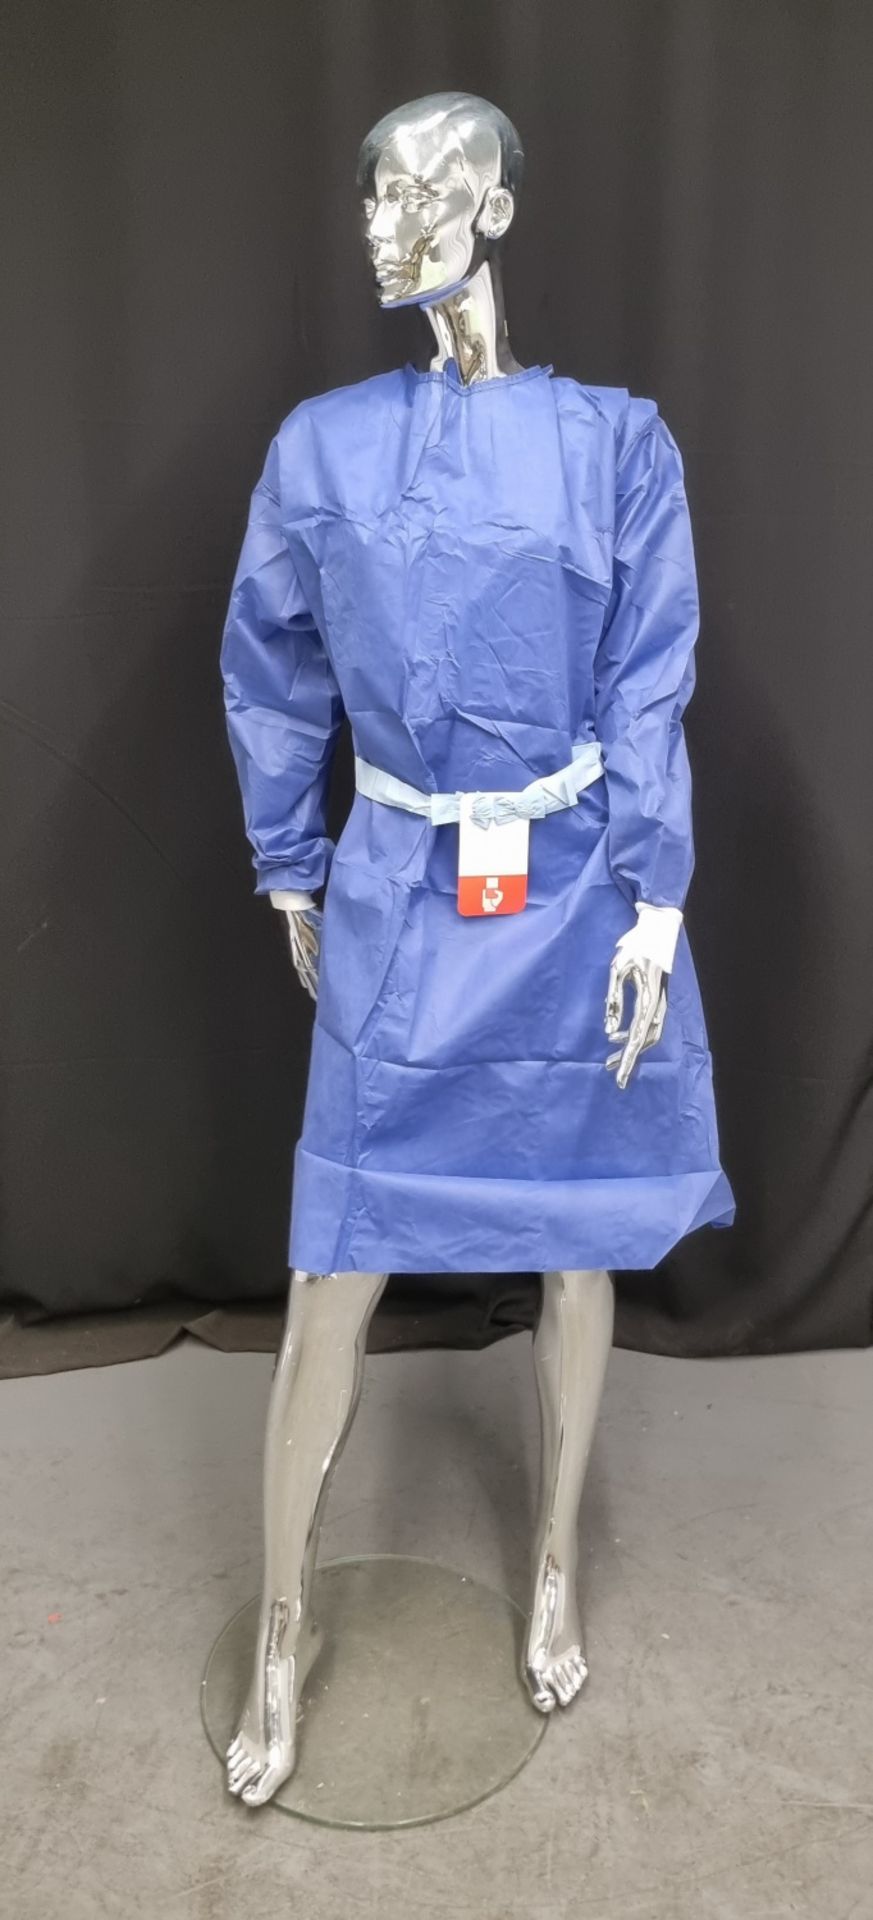 24x pallets of Guardian surgical gowns - size L - est. total qty 24000 - location LE67 1ND - PPE